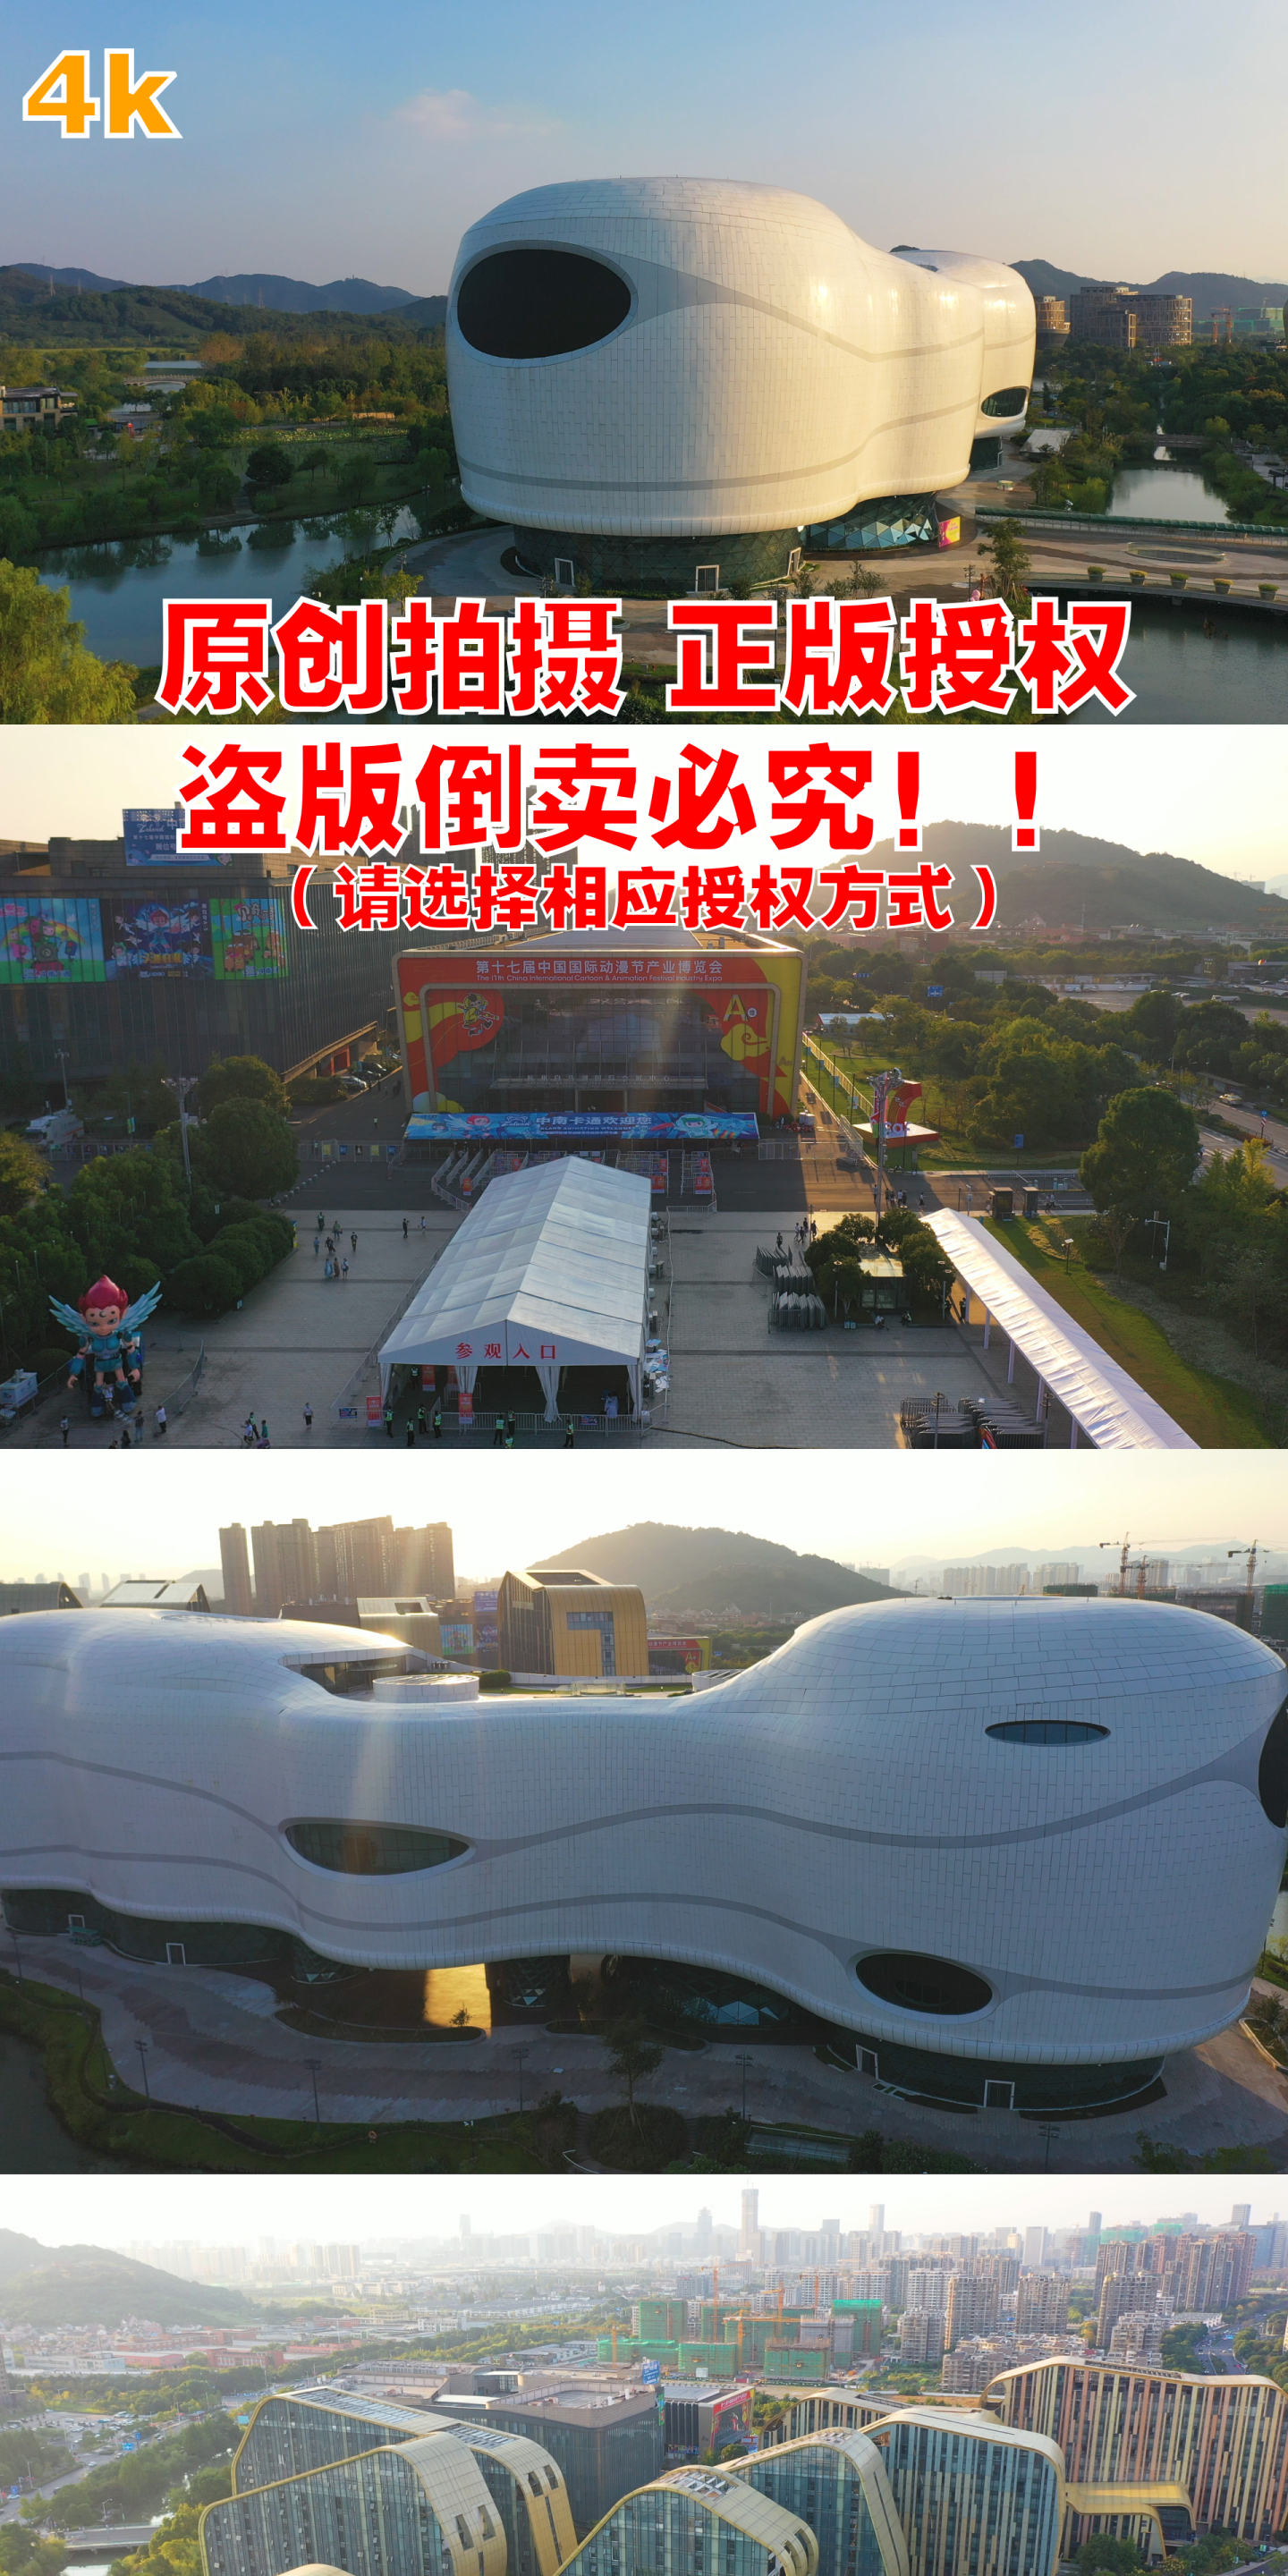 4k航拍杭州白马湖会展中心-动漫广场